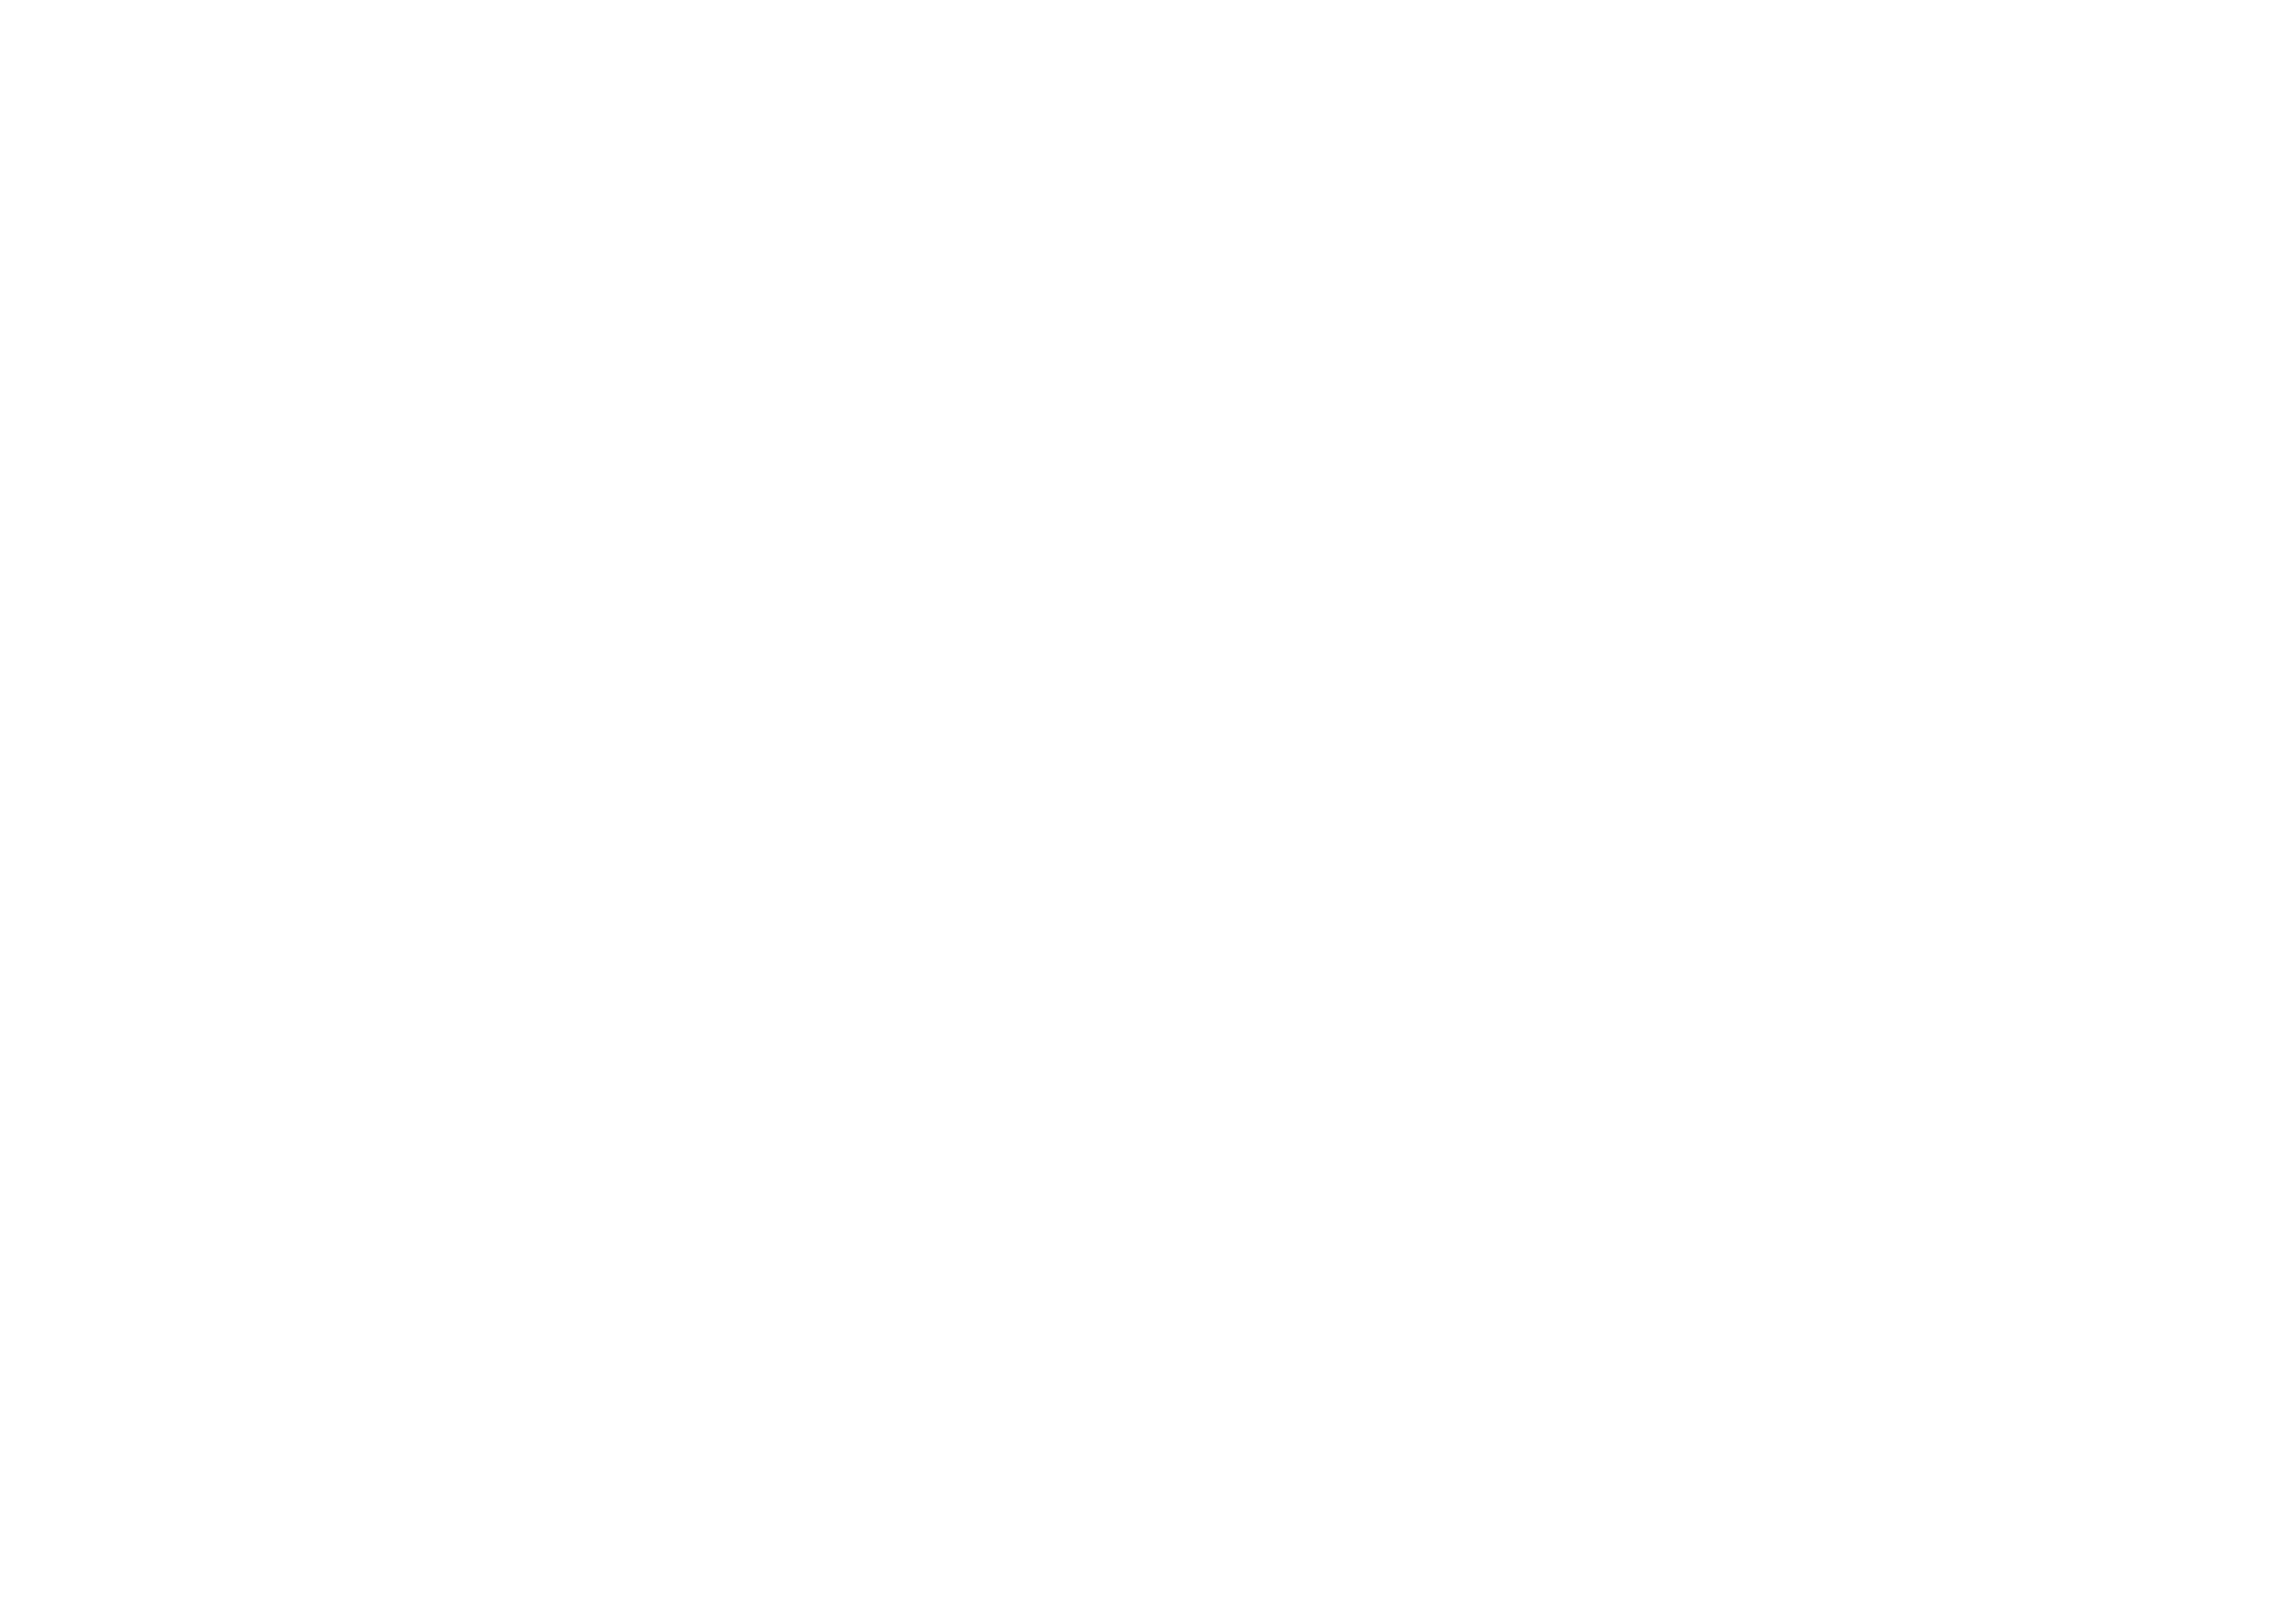 The Cabana Inn logo.